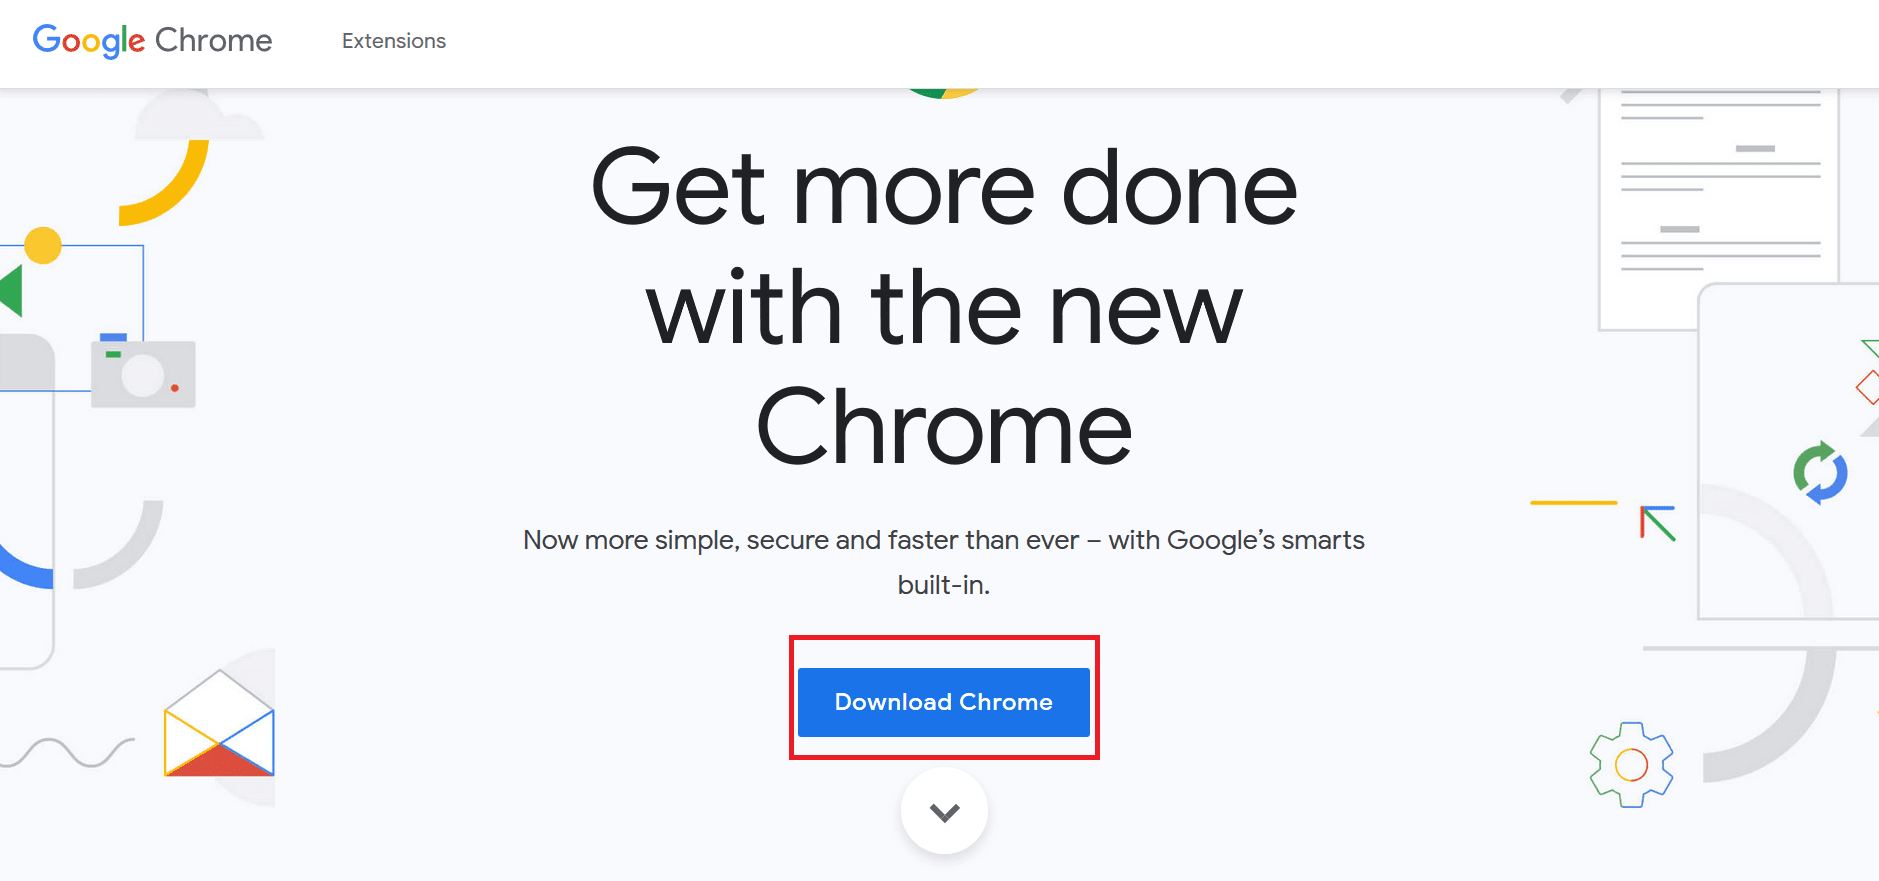 haga clic en el botón Descargar Chrome para descargar la última versión de Chrome Installer.